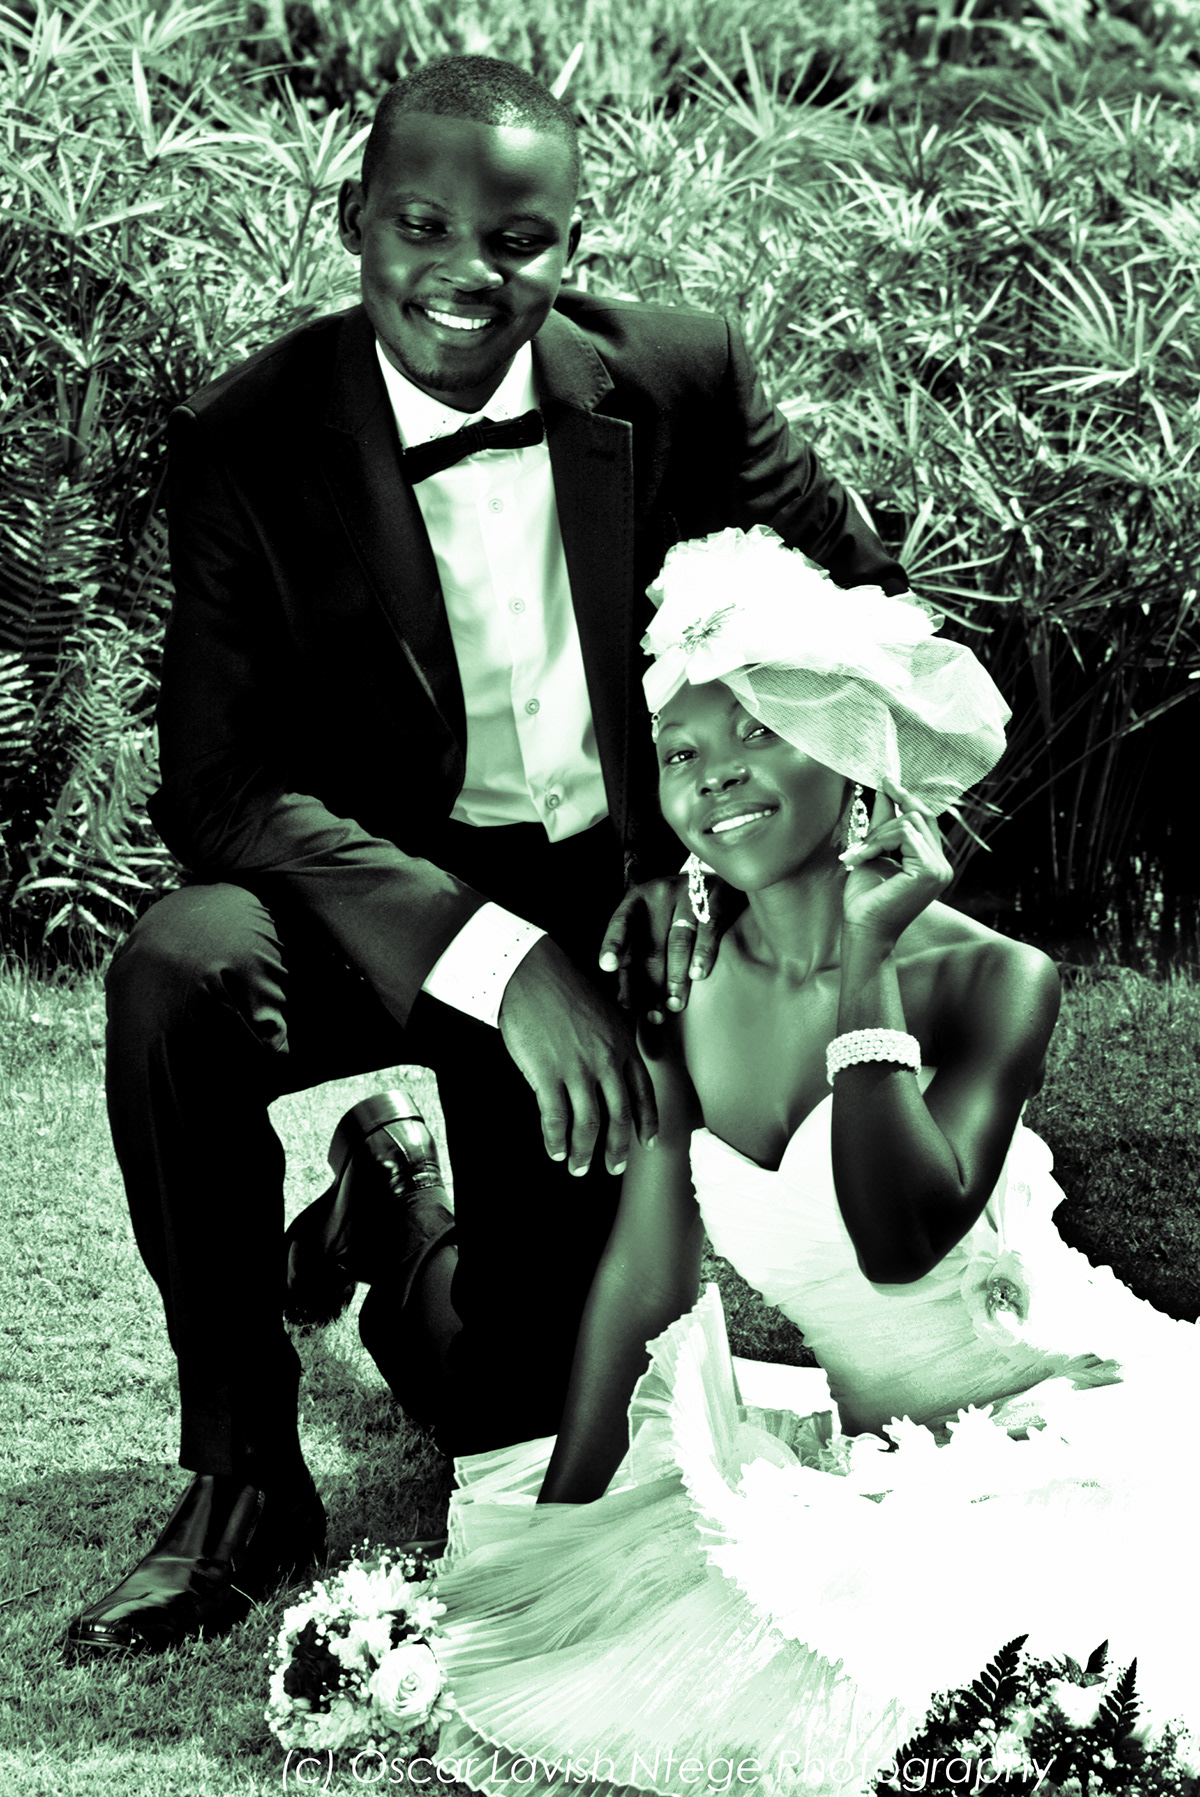 WEDDING PHOTOGRAPHY UGANDA Artistic Wedding Photography OSCAR NTEGE WEDDING UGANDA PHOTOGRAPHY 